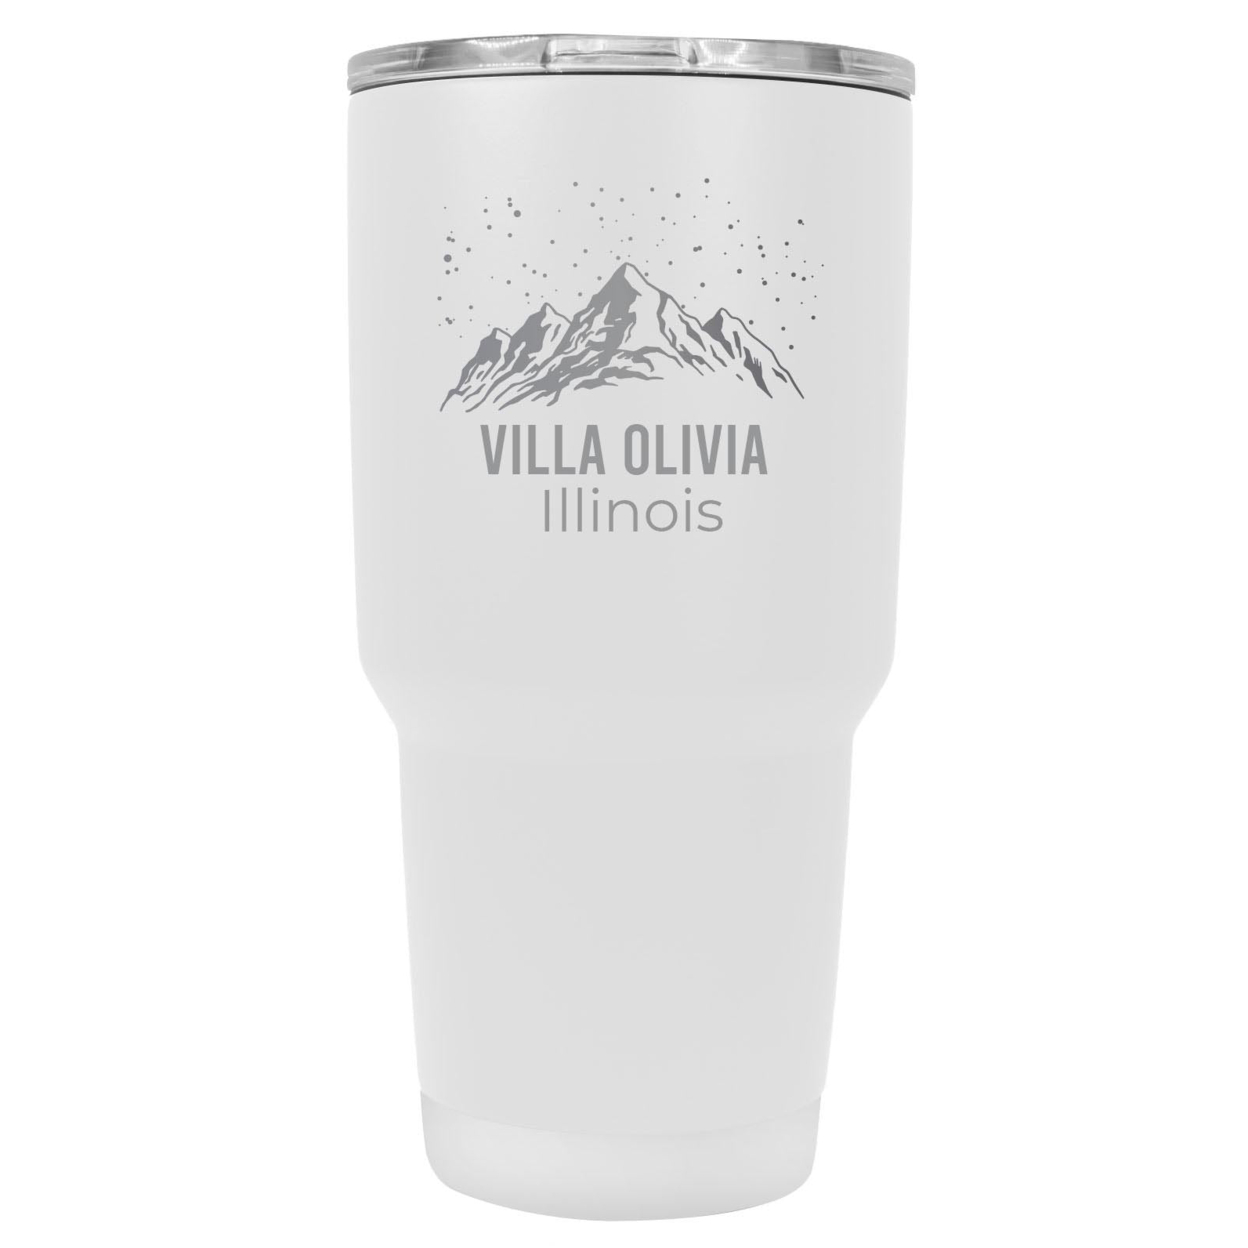 Villa Olivia Illinois Ski Snowboard Winter Souvenir Laser Engraved 24 Oz Insulated Stainless Steel Tumbler - White